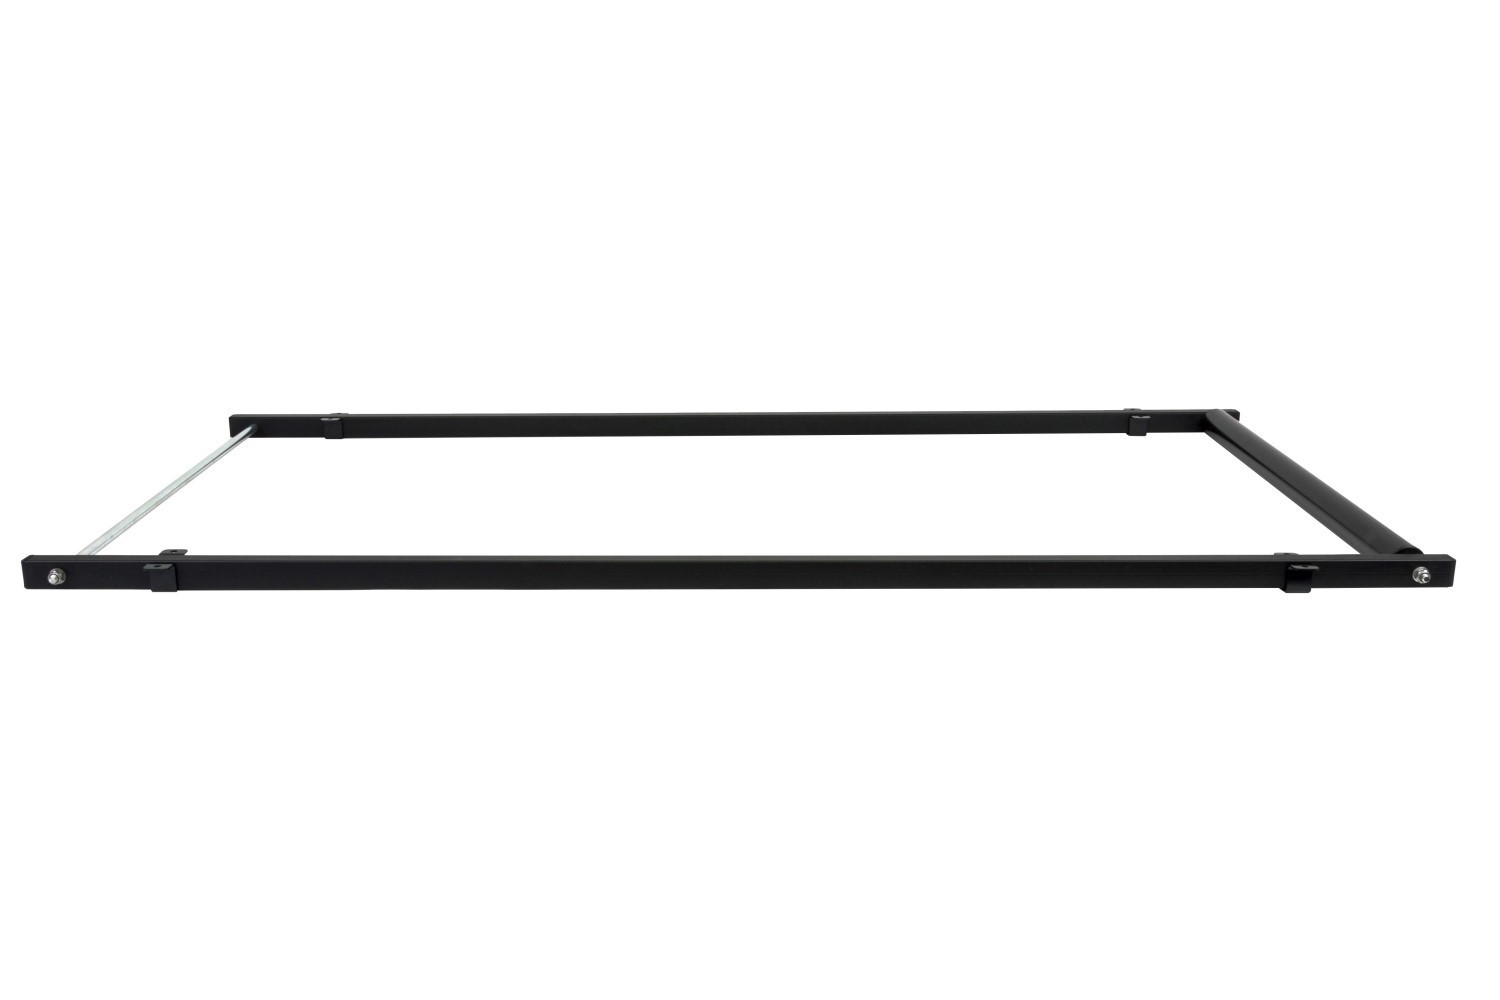 Rouleau de chargement largeur 90 cm - longueur cadre 140 cm Menabo Professional